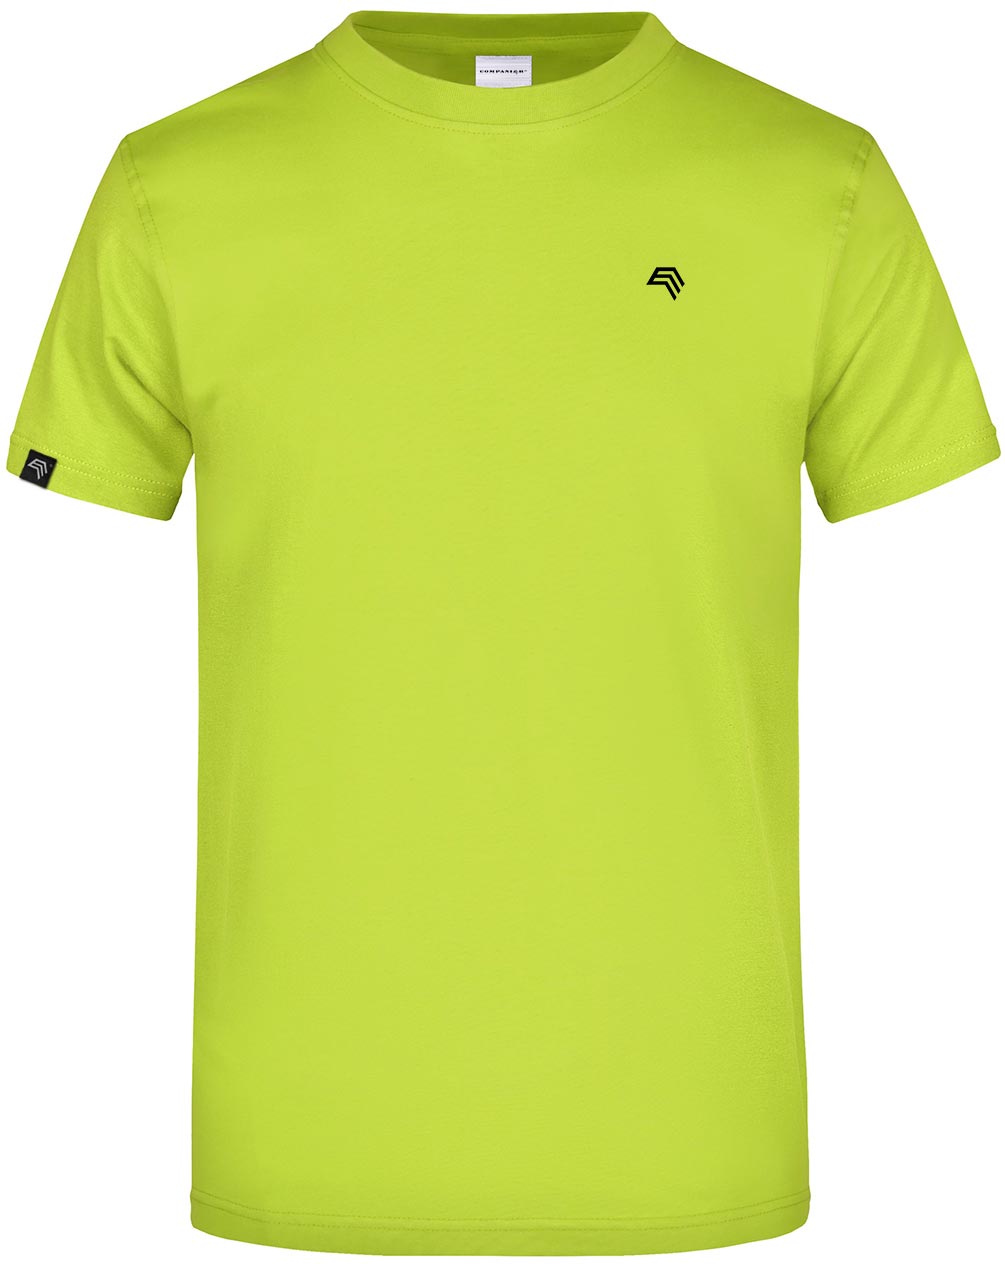 JAN 0002 ― Herren Heavy Komfort T-Shirt - Grün Acid Gelb